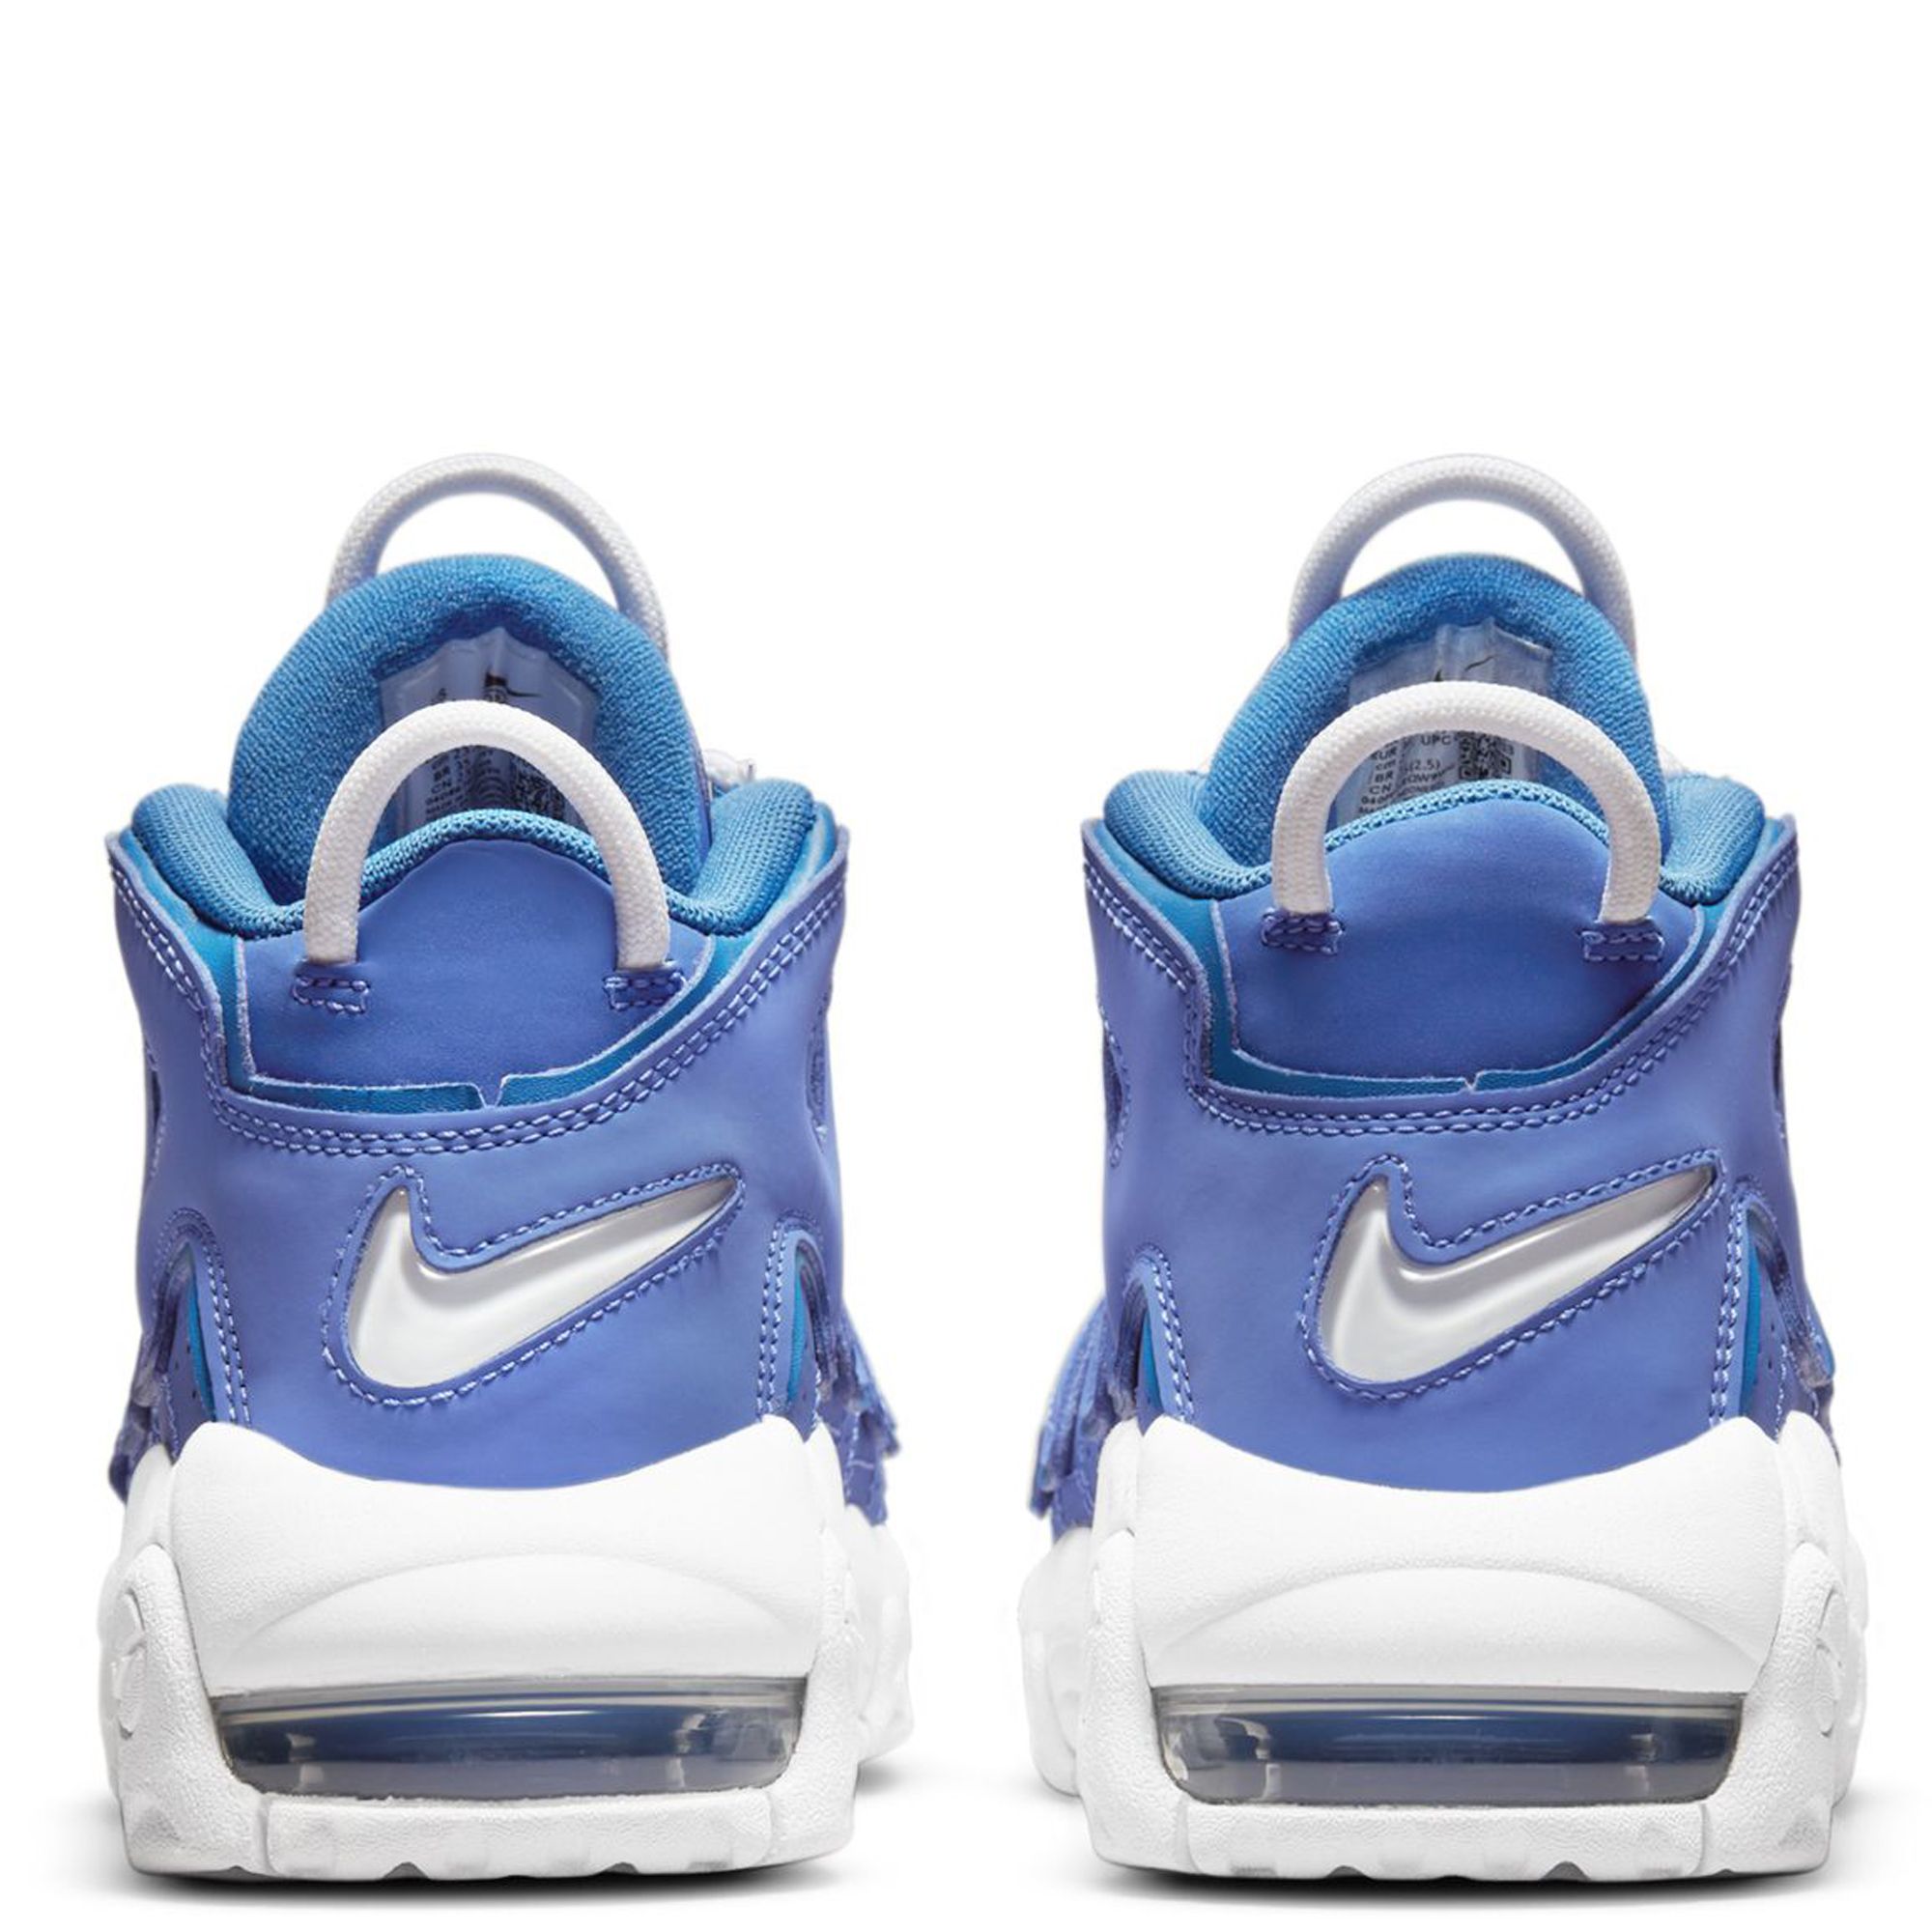 Nike Air More Uptempo Sky Blue White - Sneaker Bar Detroit